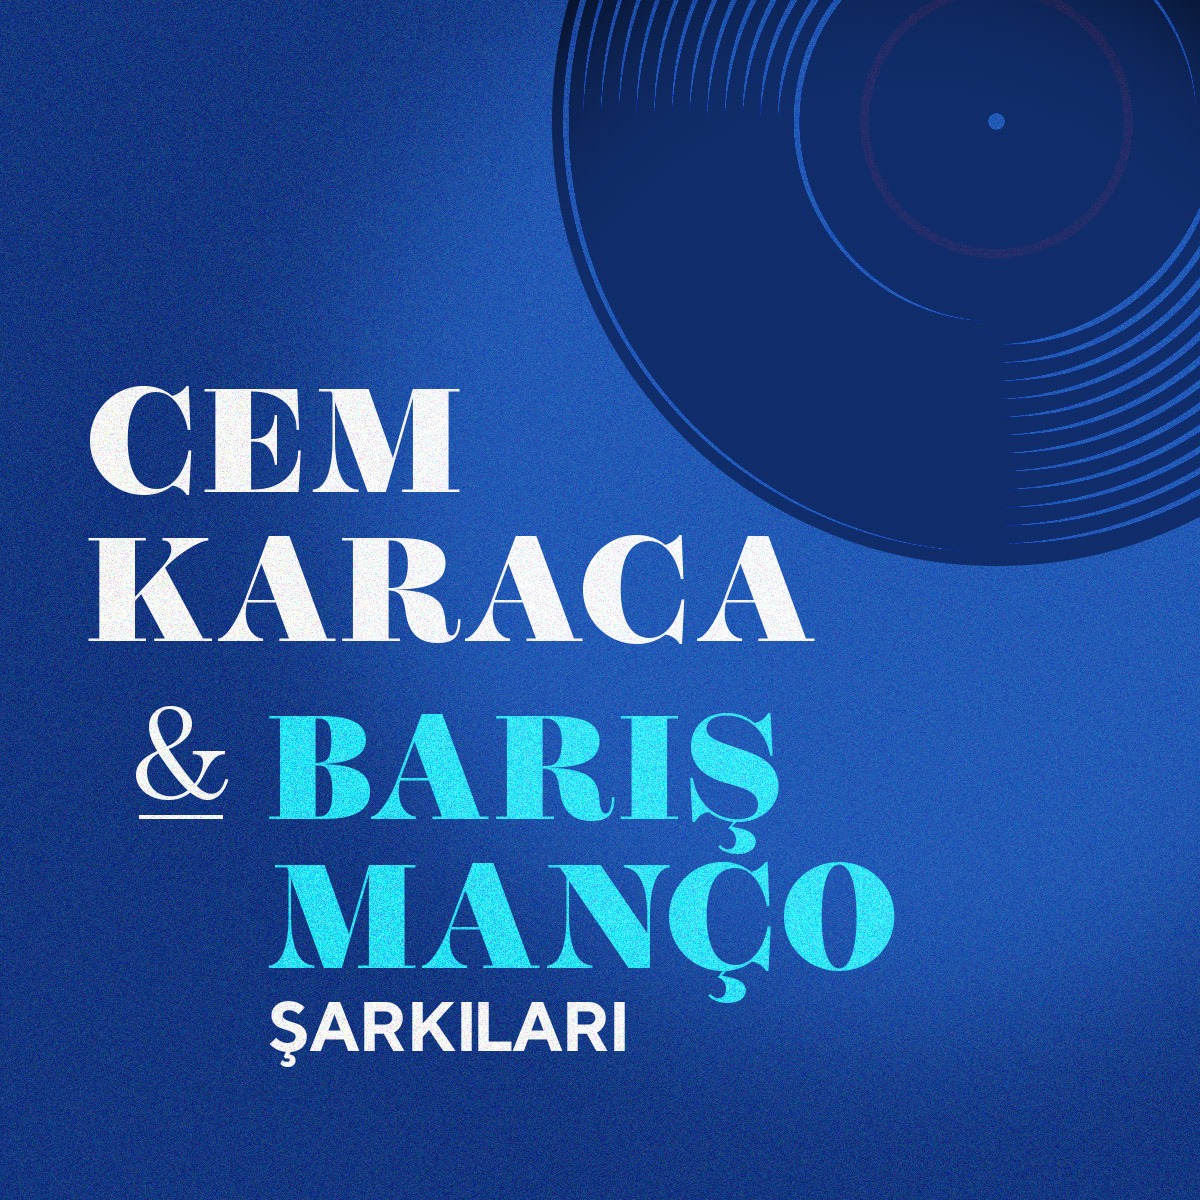 Cem Karaca & Barış Manço Şarkıları